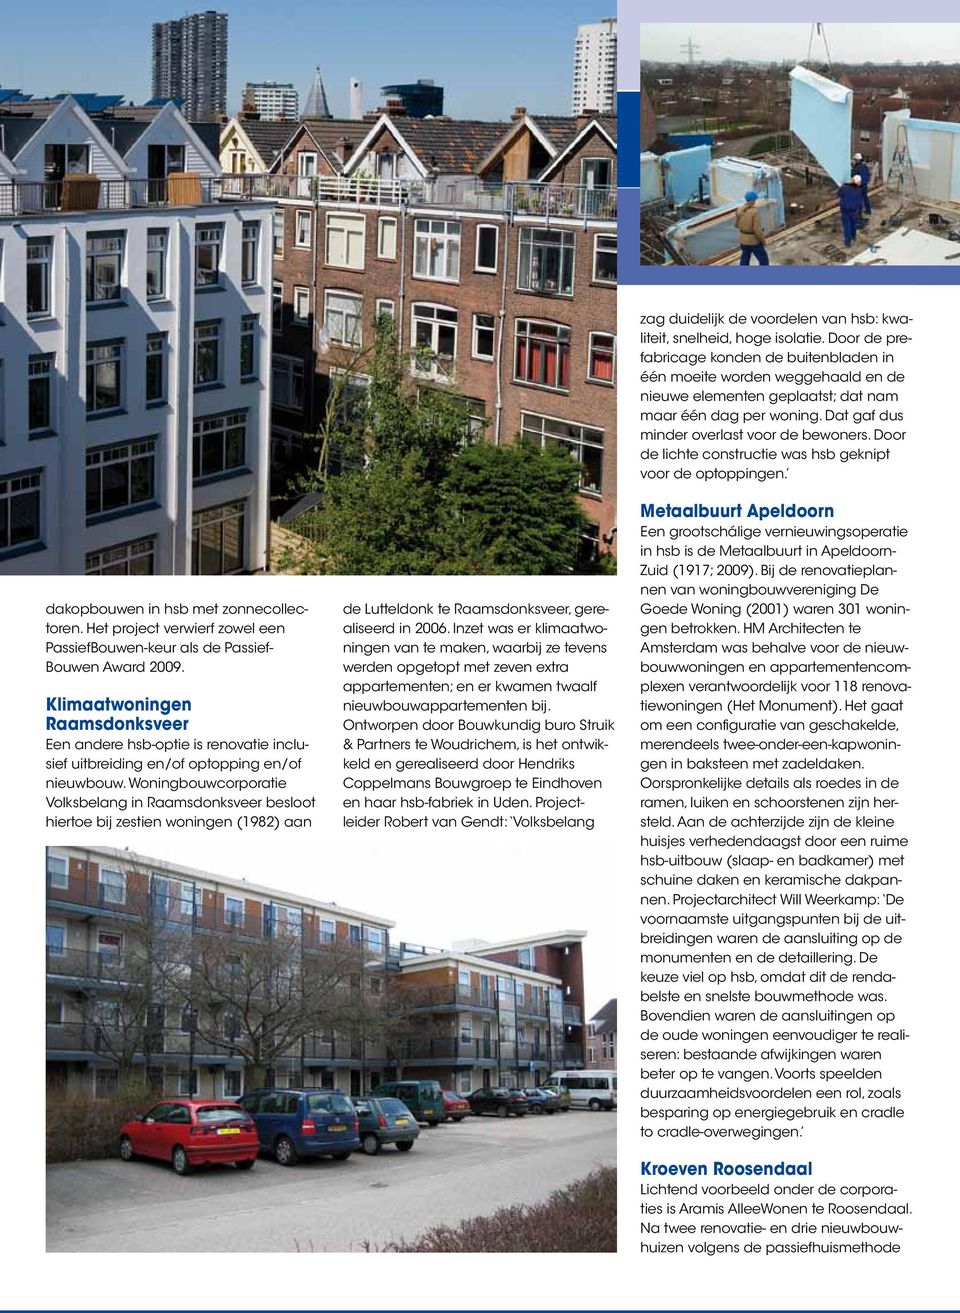 Woningbouwcorporatie Volksbelang in Raamsdonksveer besloot hiertoe bij zestien woningen (1982) aan de Lutteldonk te Raamsdonksveer, gerealiseerd in 2006.